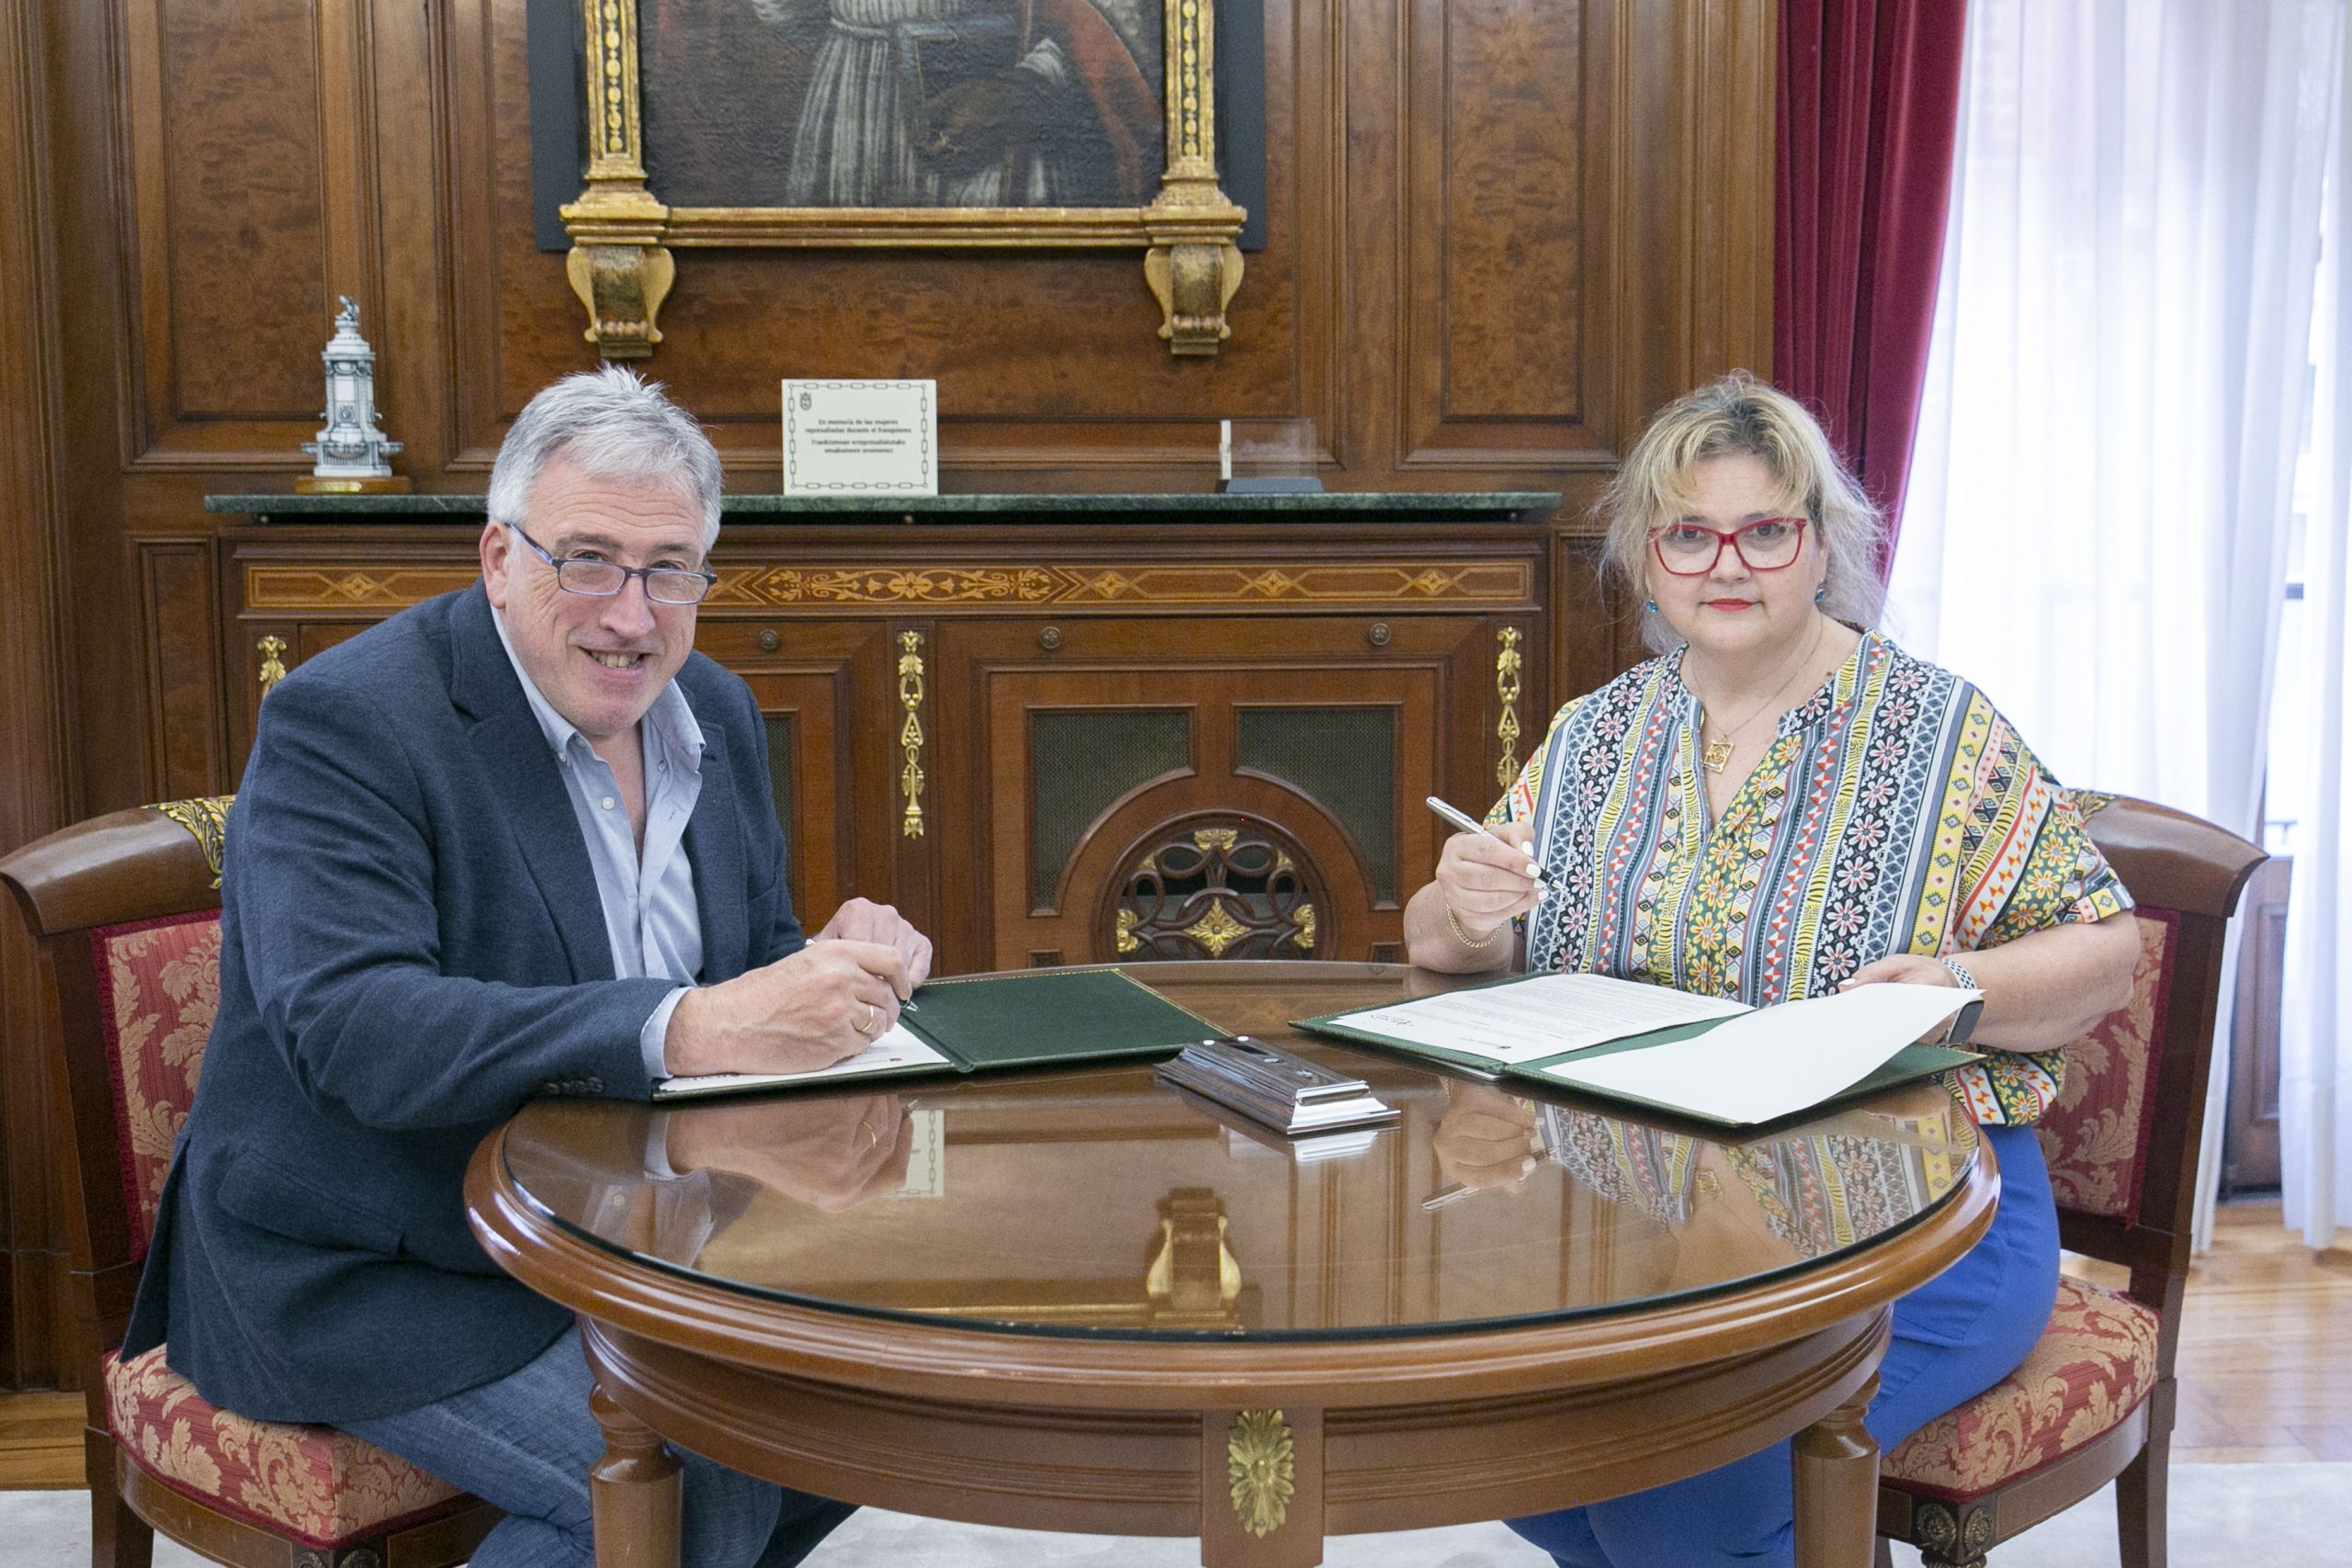 Momento de la firma del convenio en el que se encuentran sentados con los documentos del Convenio: el alcalde, Joseba Asiron y la vicepresidenta del CERMIN, Cristina Mondragón.